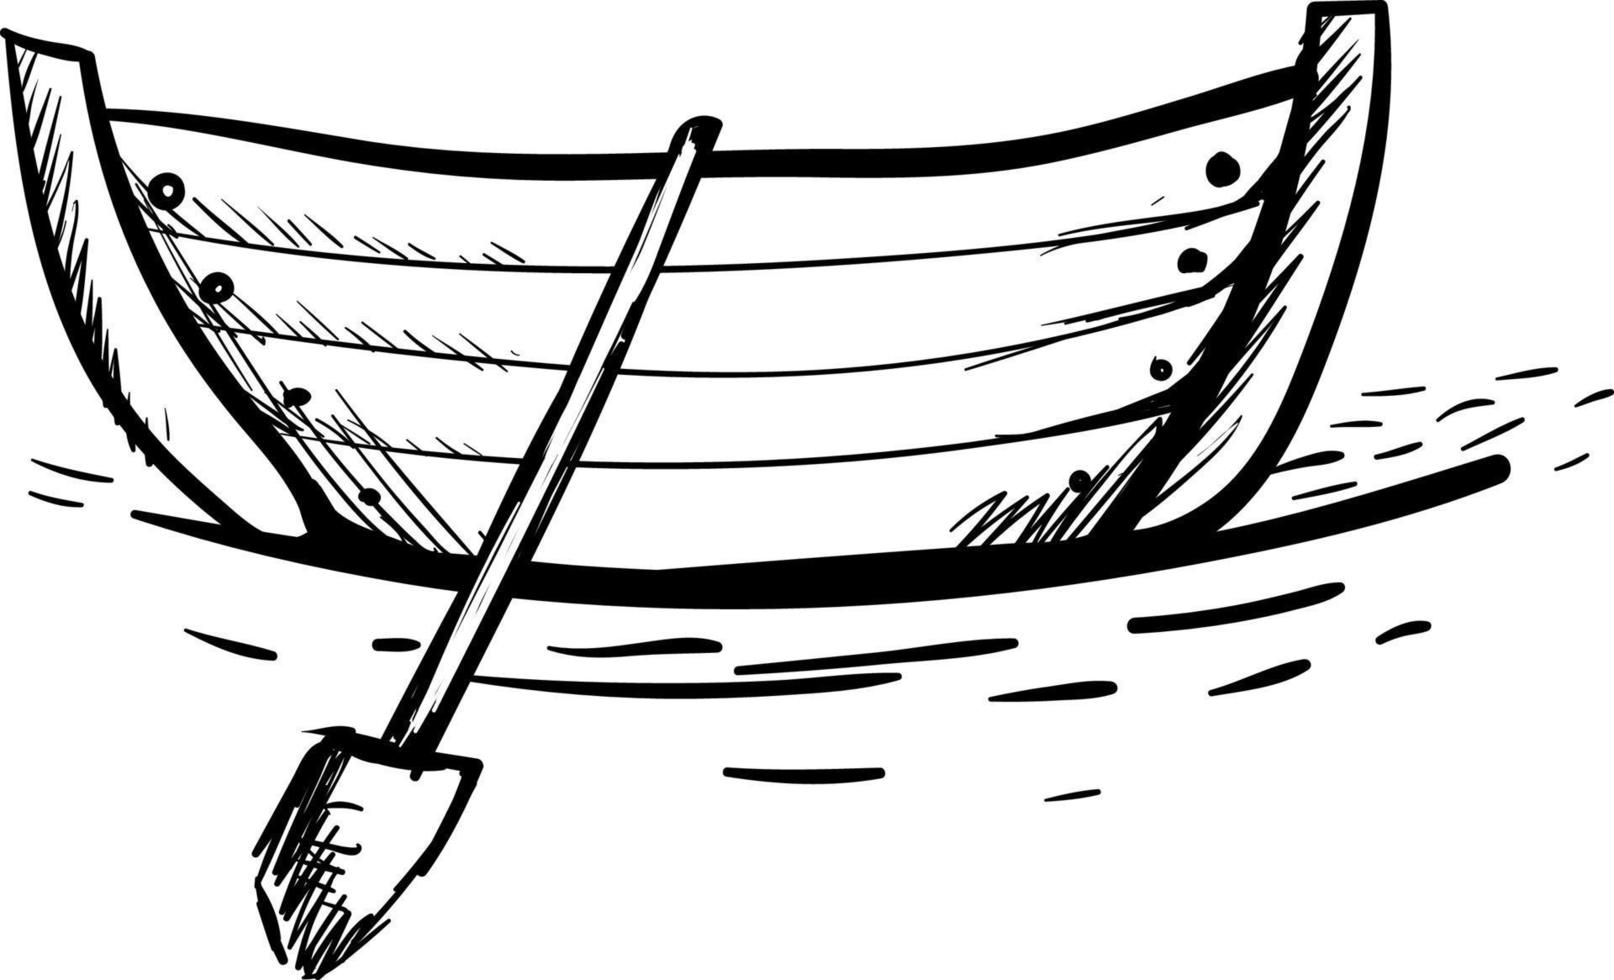 båt teckning, illustration, vektor på vit bakgrund.